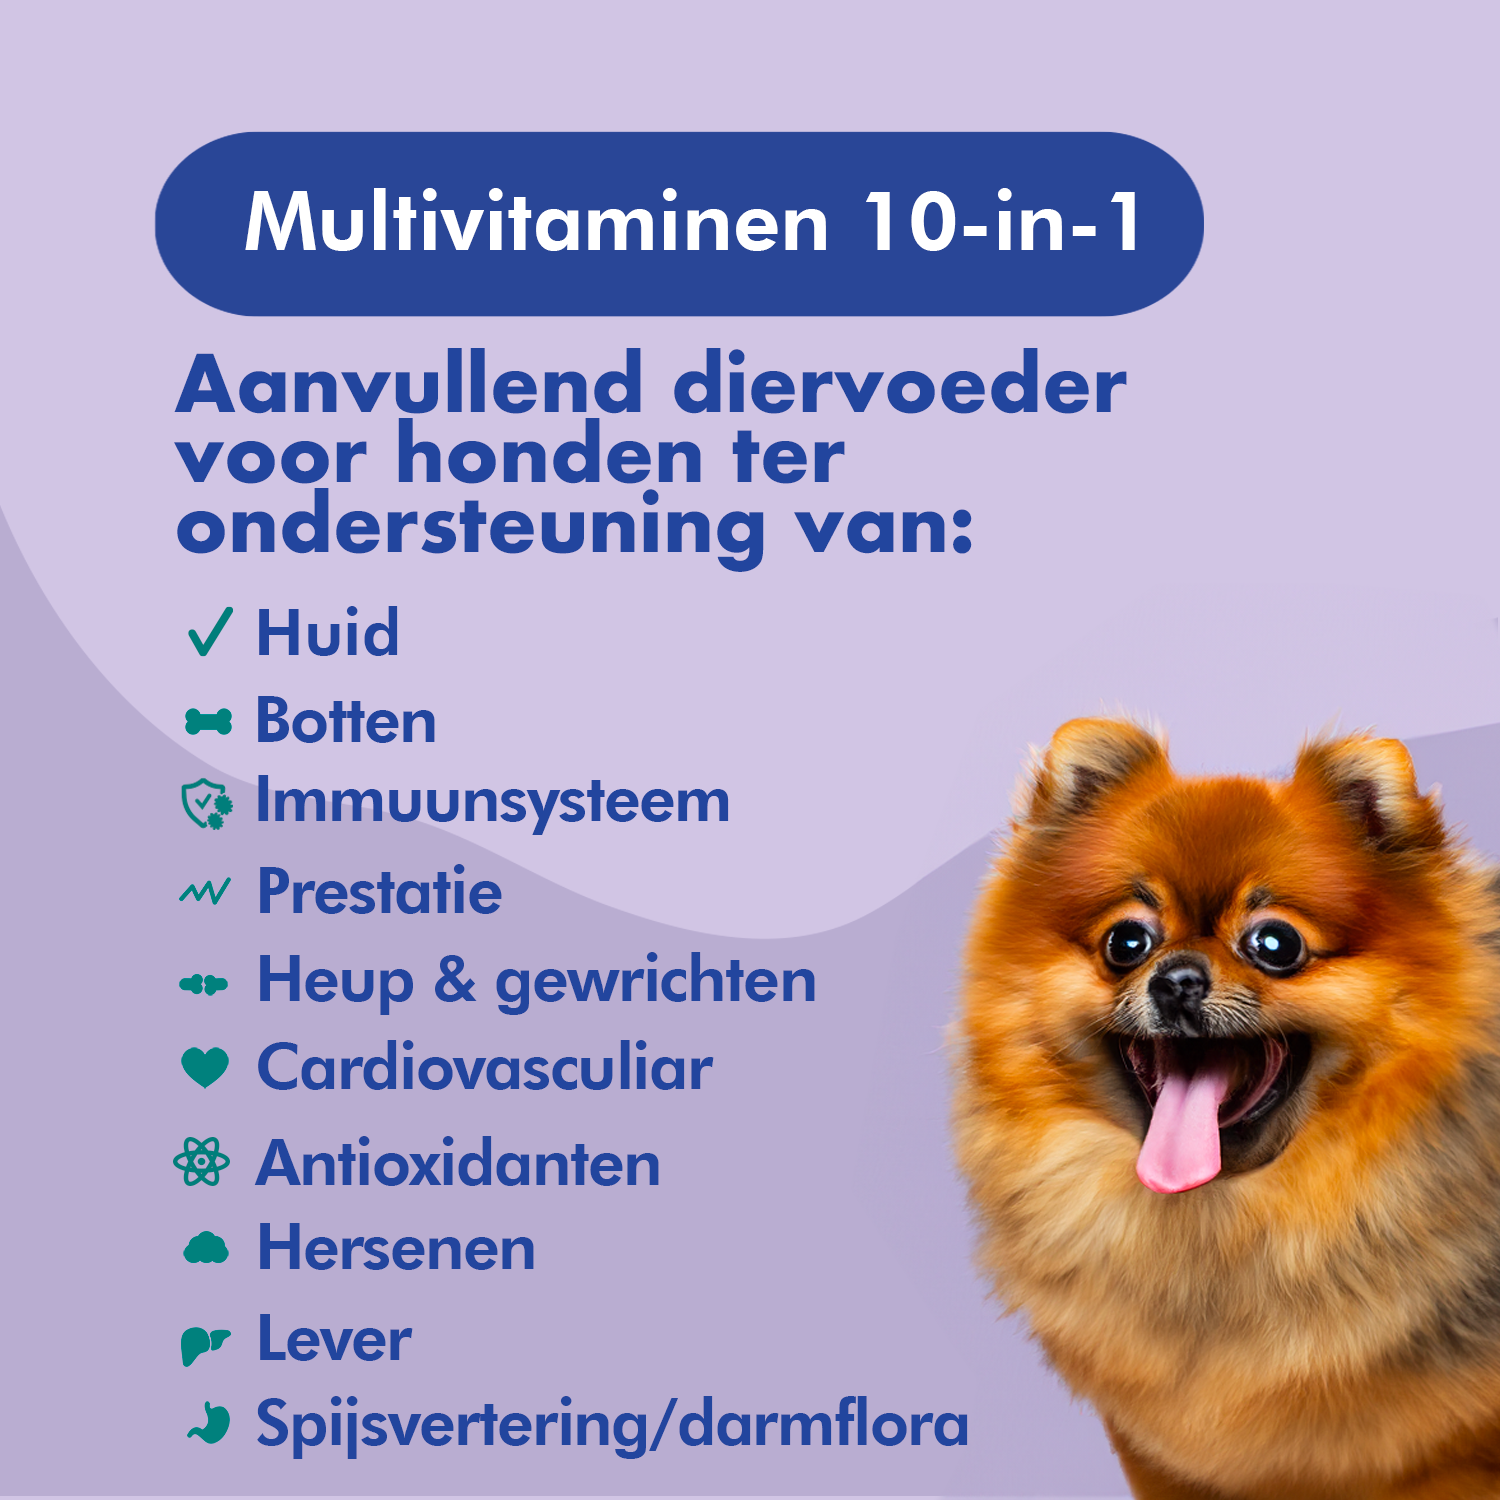 FestyBites Multivitaminen 10-in-1: aanvullend diervoer voor honden, verbetert huid, botten, weerstand, immuunsysteem, prestaties, heupen, gewrichten, cardiovasculair, hersenen, lever, spijsvertering.